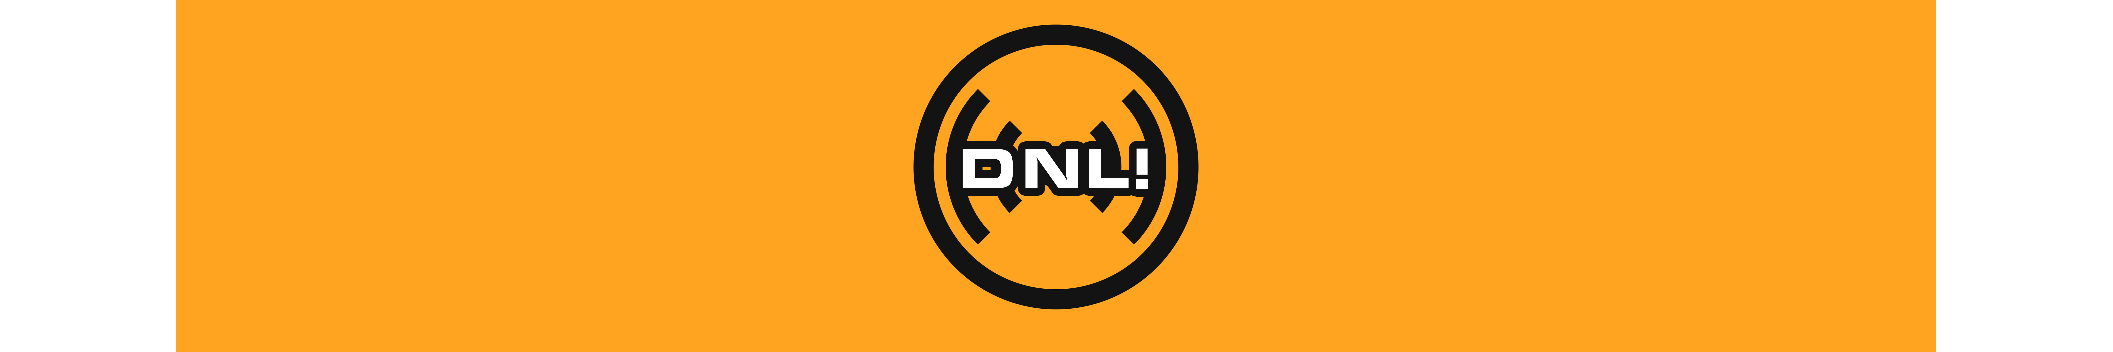 DNL!